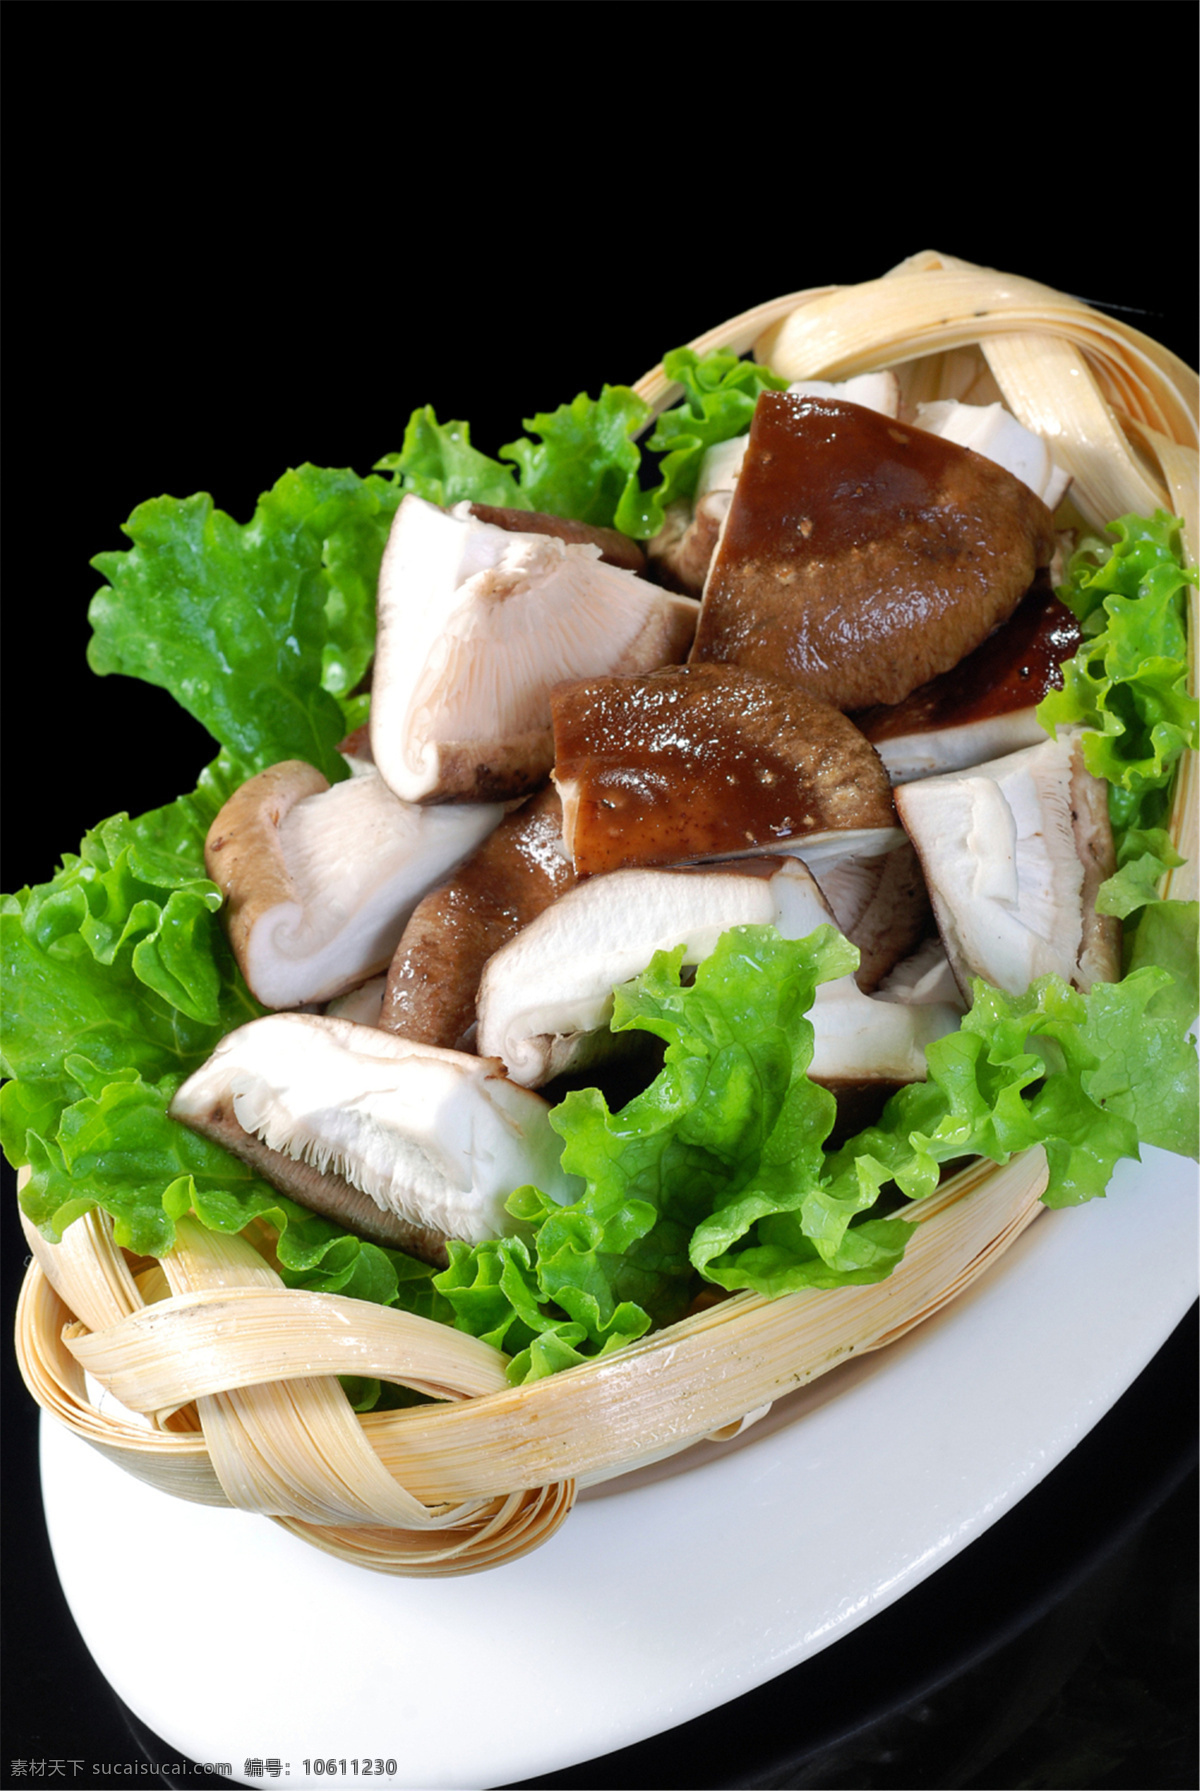 香菇图片 香菇 美食 传统美食 餐饮美食 高清菜谱用图